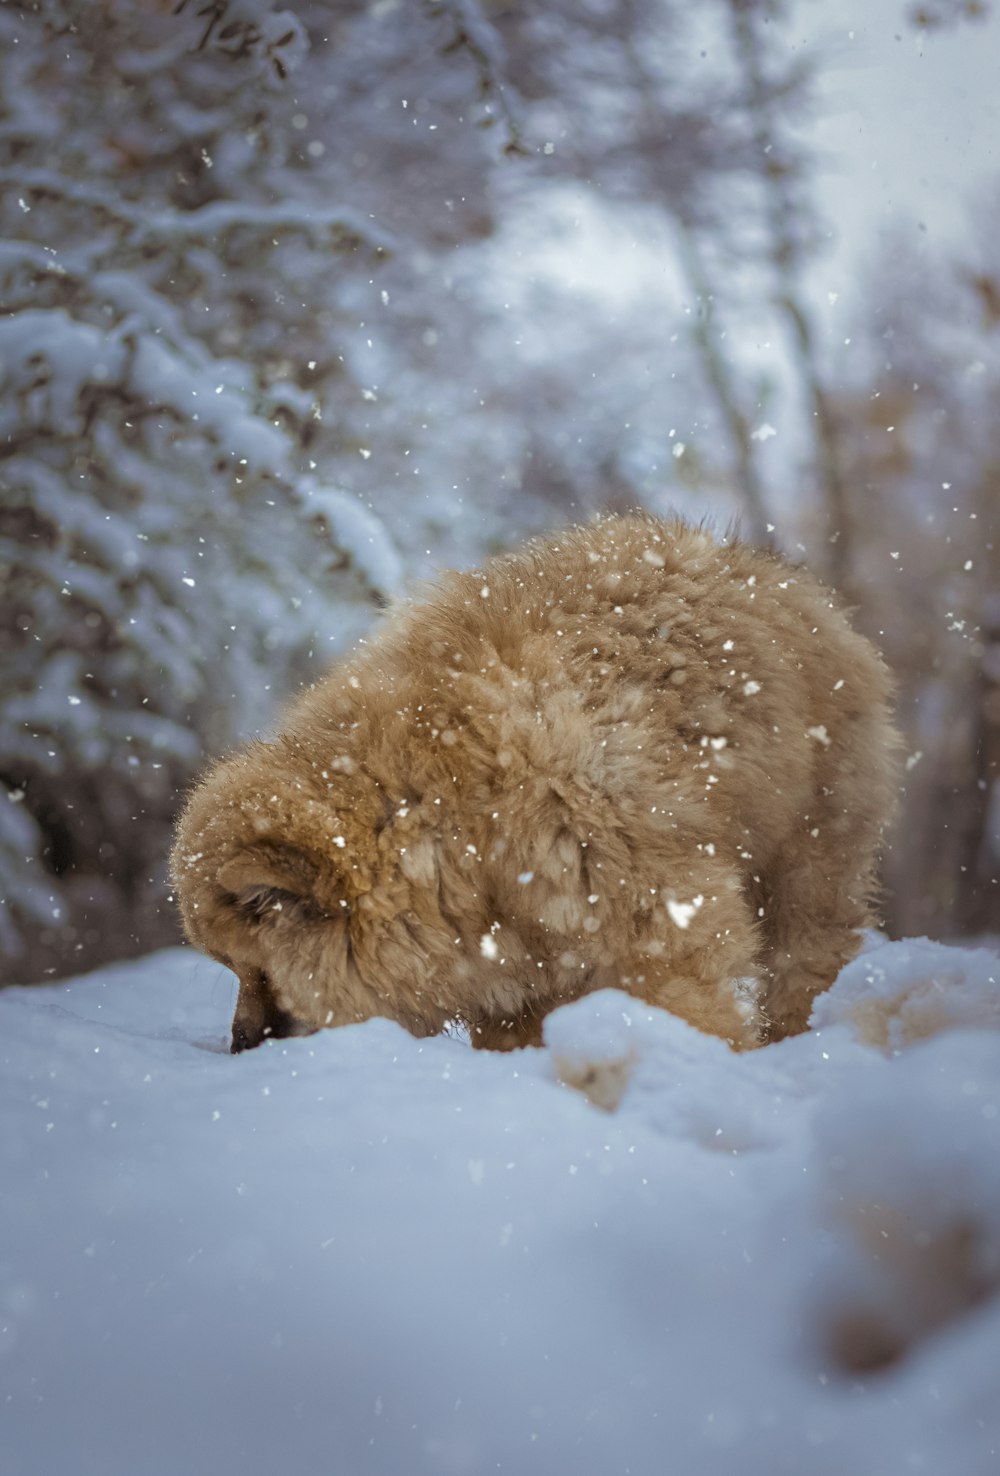 brauner langhaariger Hund tagsüber auf schneebedecktem Boden